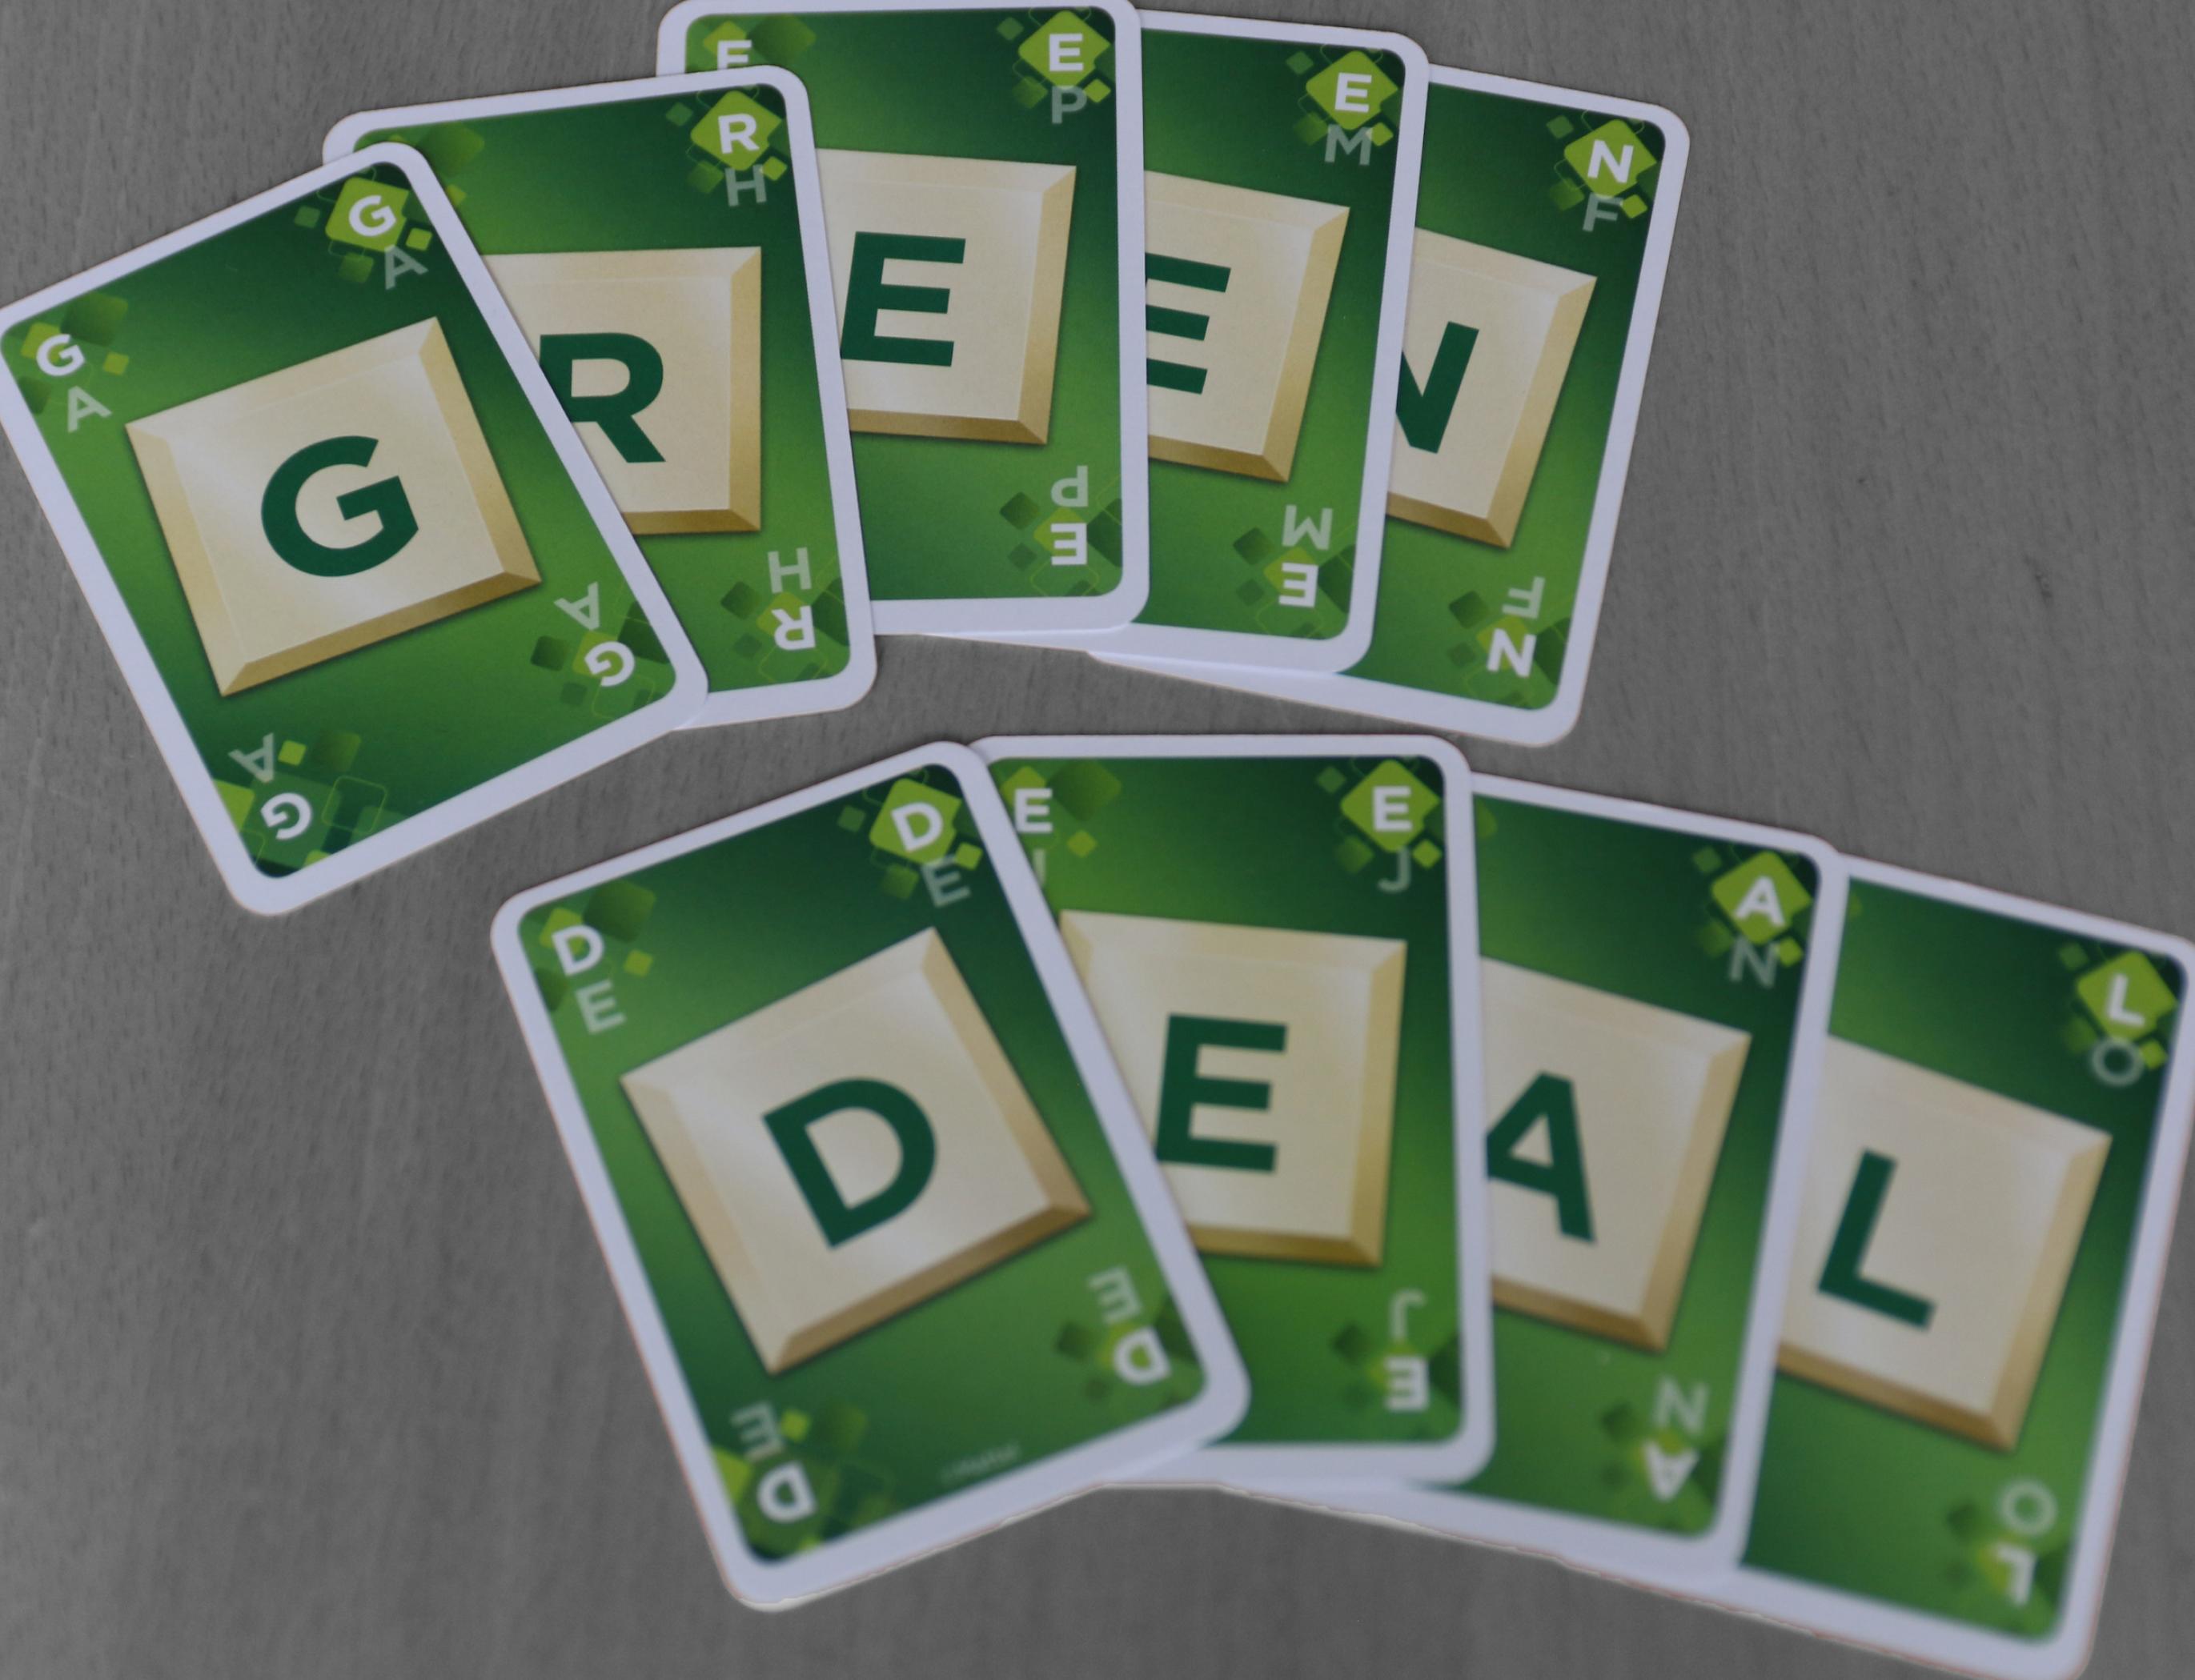 Auf einem Tisch liegen neun Karten mit Buchstaben, die zusammen „Green Deal“ buchstabieren. Während die Karten farbig und vor allem grün sind, ist die Tischoberfläche schwarz-weiß gehalten. – Der europäische Green Deal soll nach den Forderungen vieler Expert*innen aus Politik, Industrie und Zivilgesellschaft die graue Wirtschaft in eine grüne überführen.